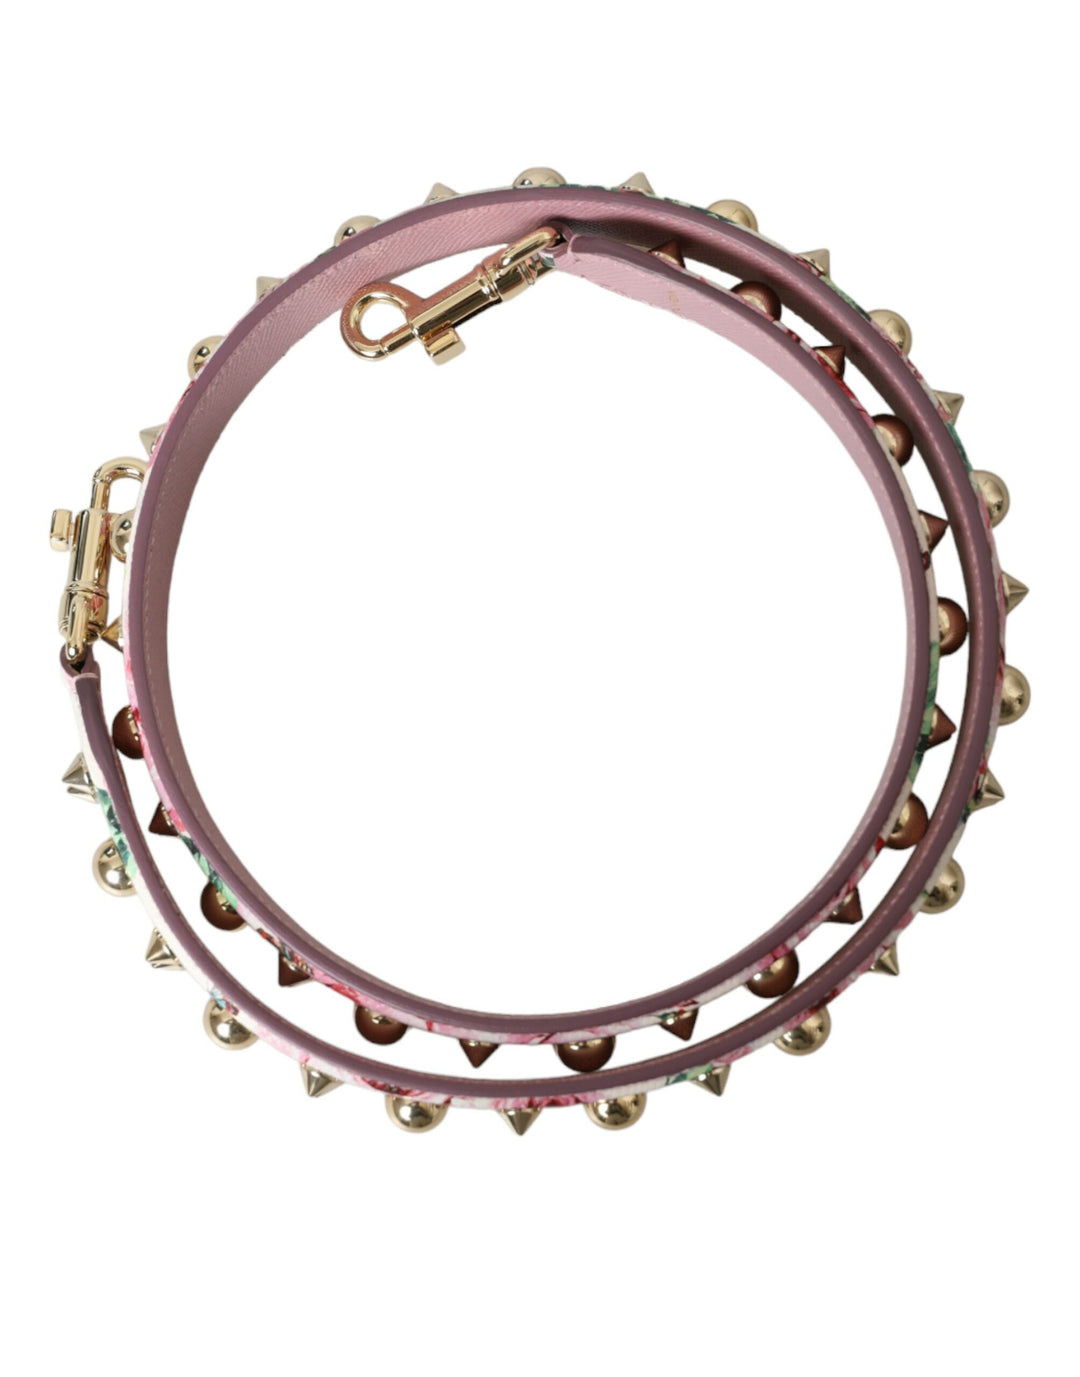 Dolce & Gabbana Pink Floral Handbag Accessory Shoulder Strap